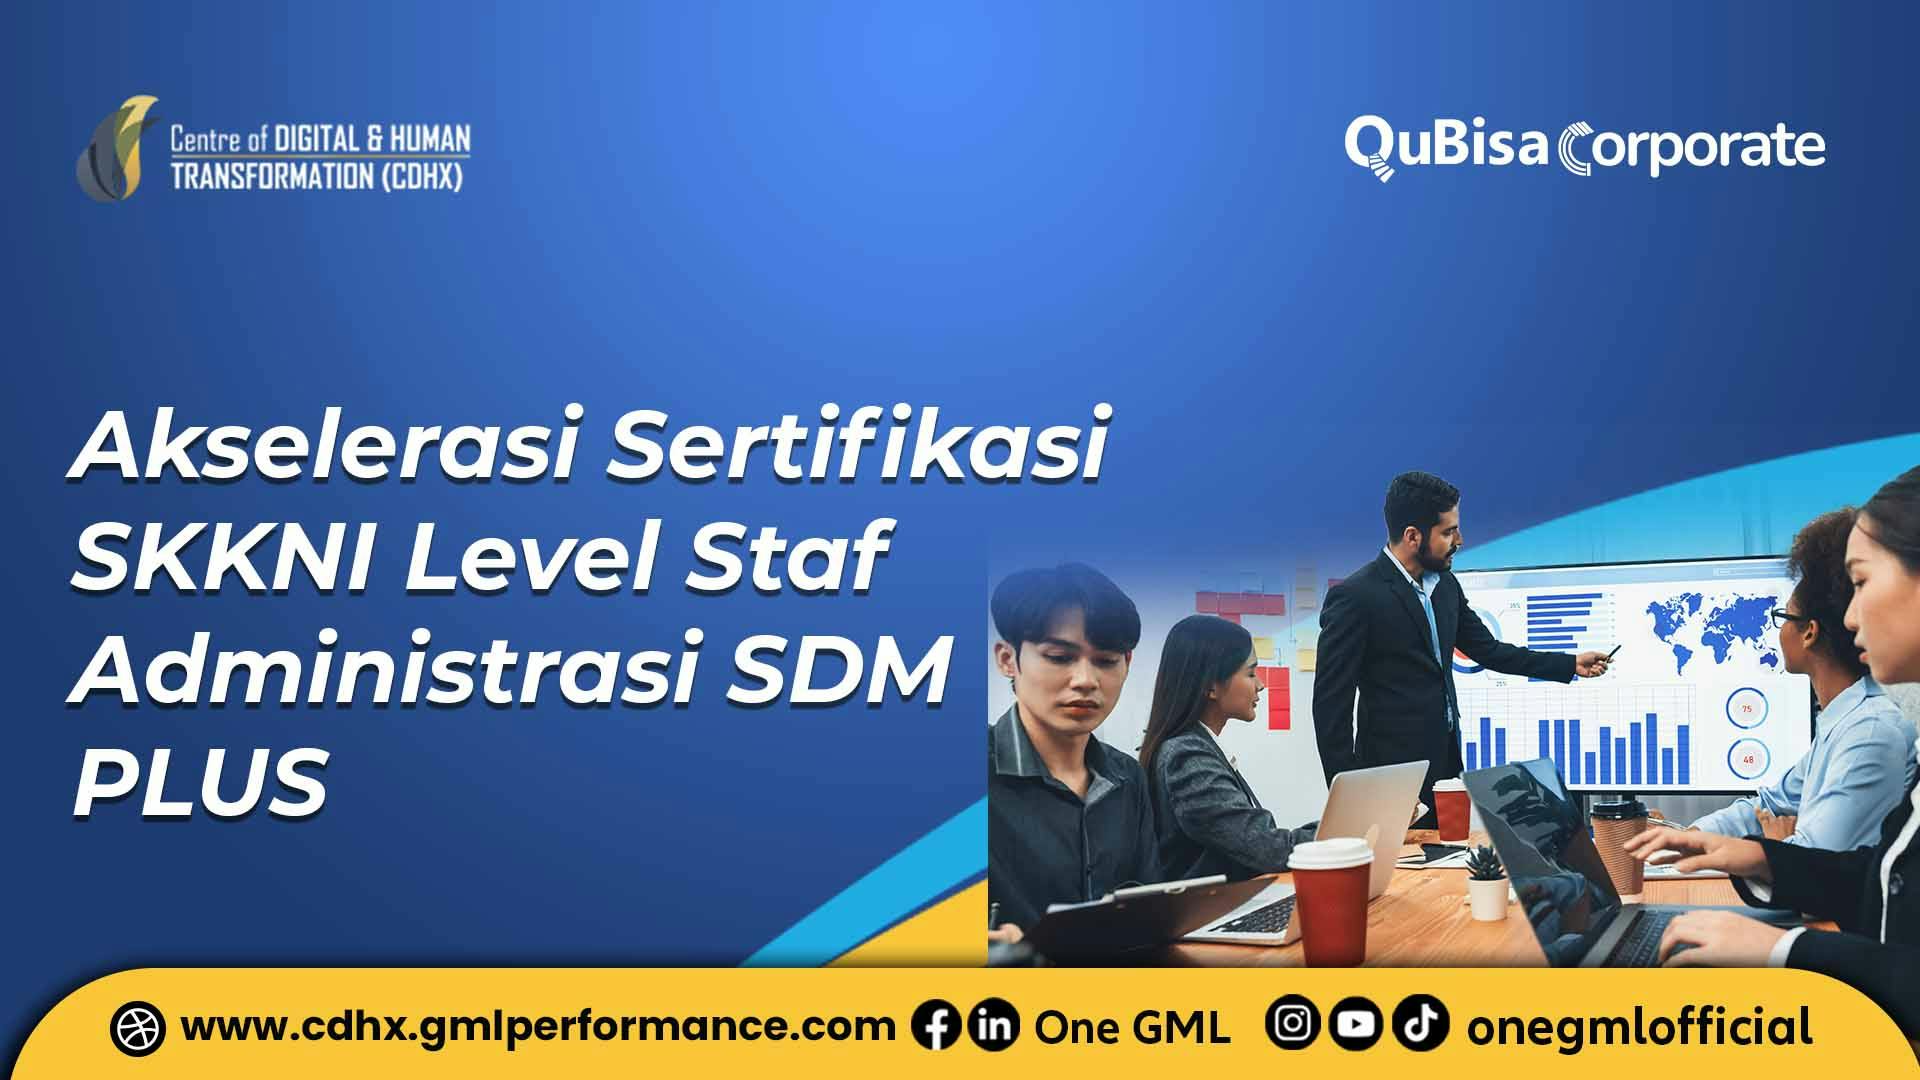 Akselerasi Sertifikasi SKKNI Level Staf Administrasi SDM PLUS.jpg